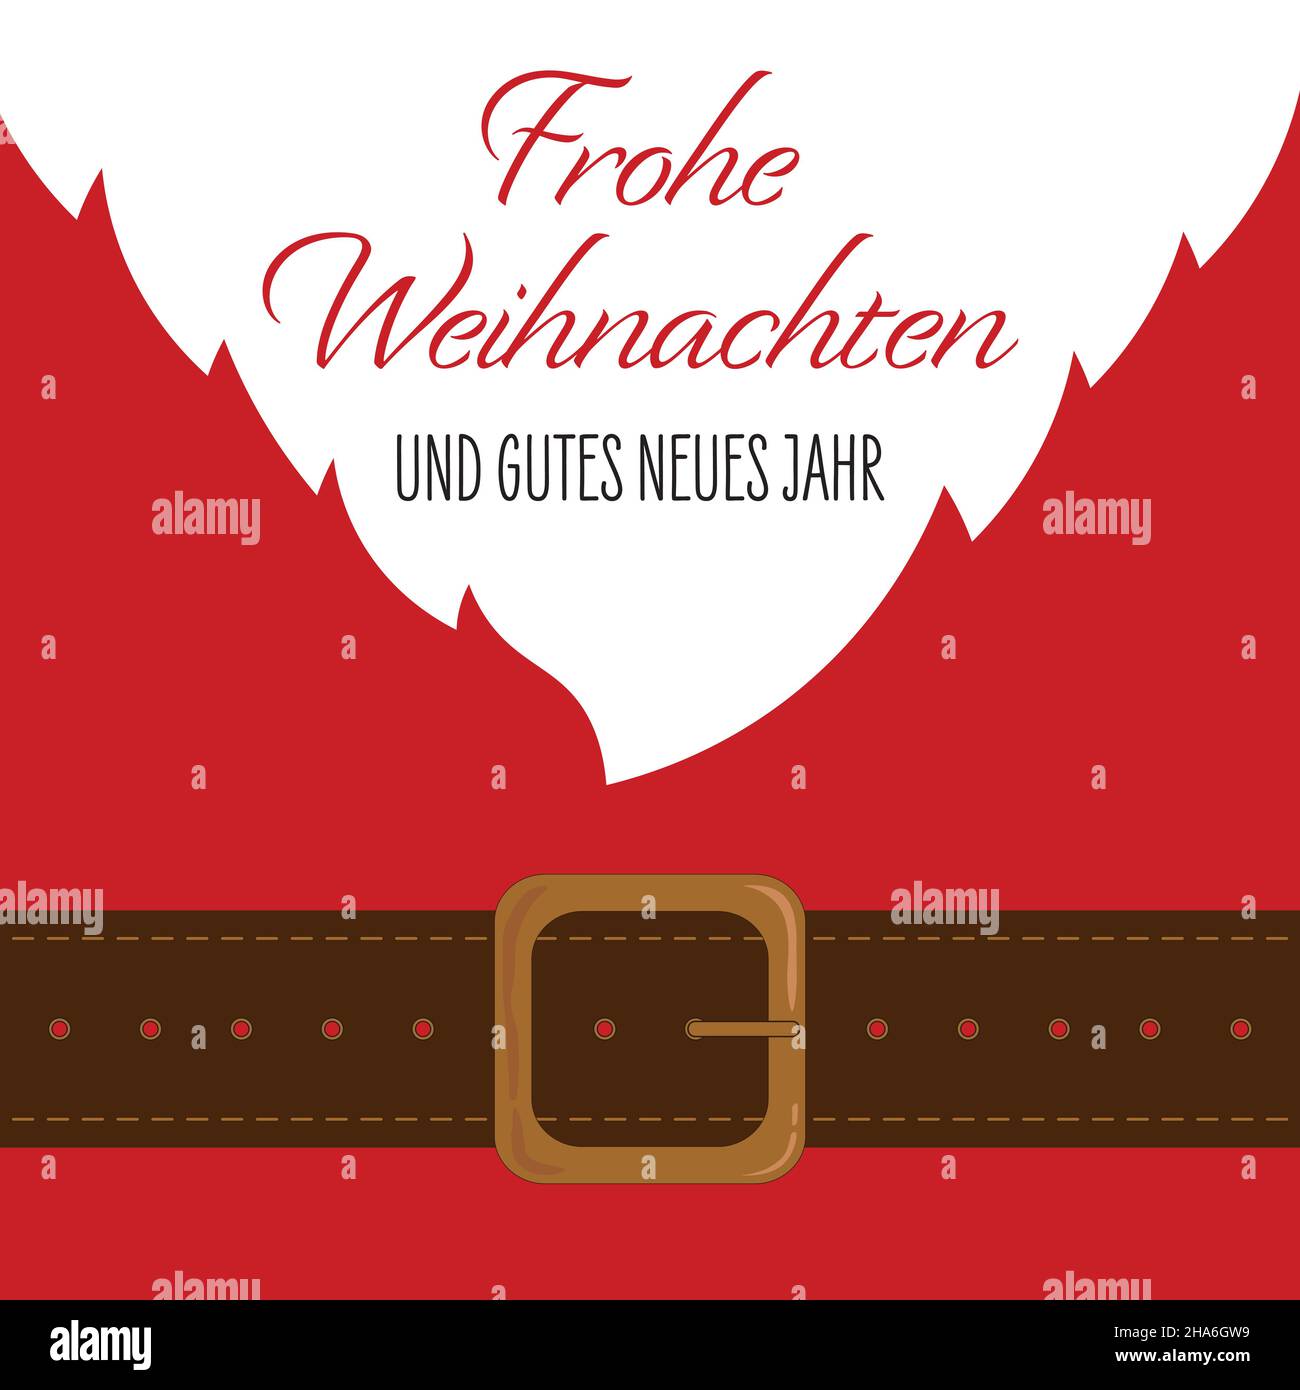 Texto en lengua alemana - Frohe Weihachten. Und gutes neues Jahr. Traducción: Feliz Navidad y Feliz Año Nuevo Ilustración del Vector